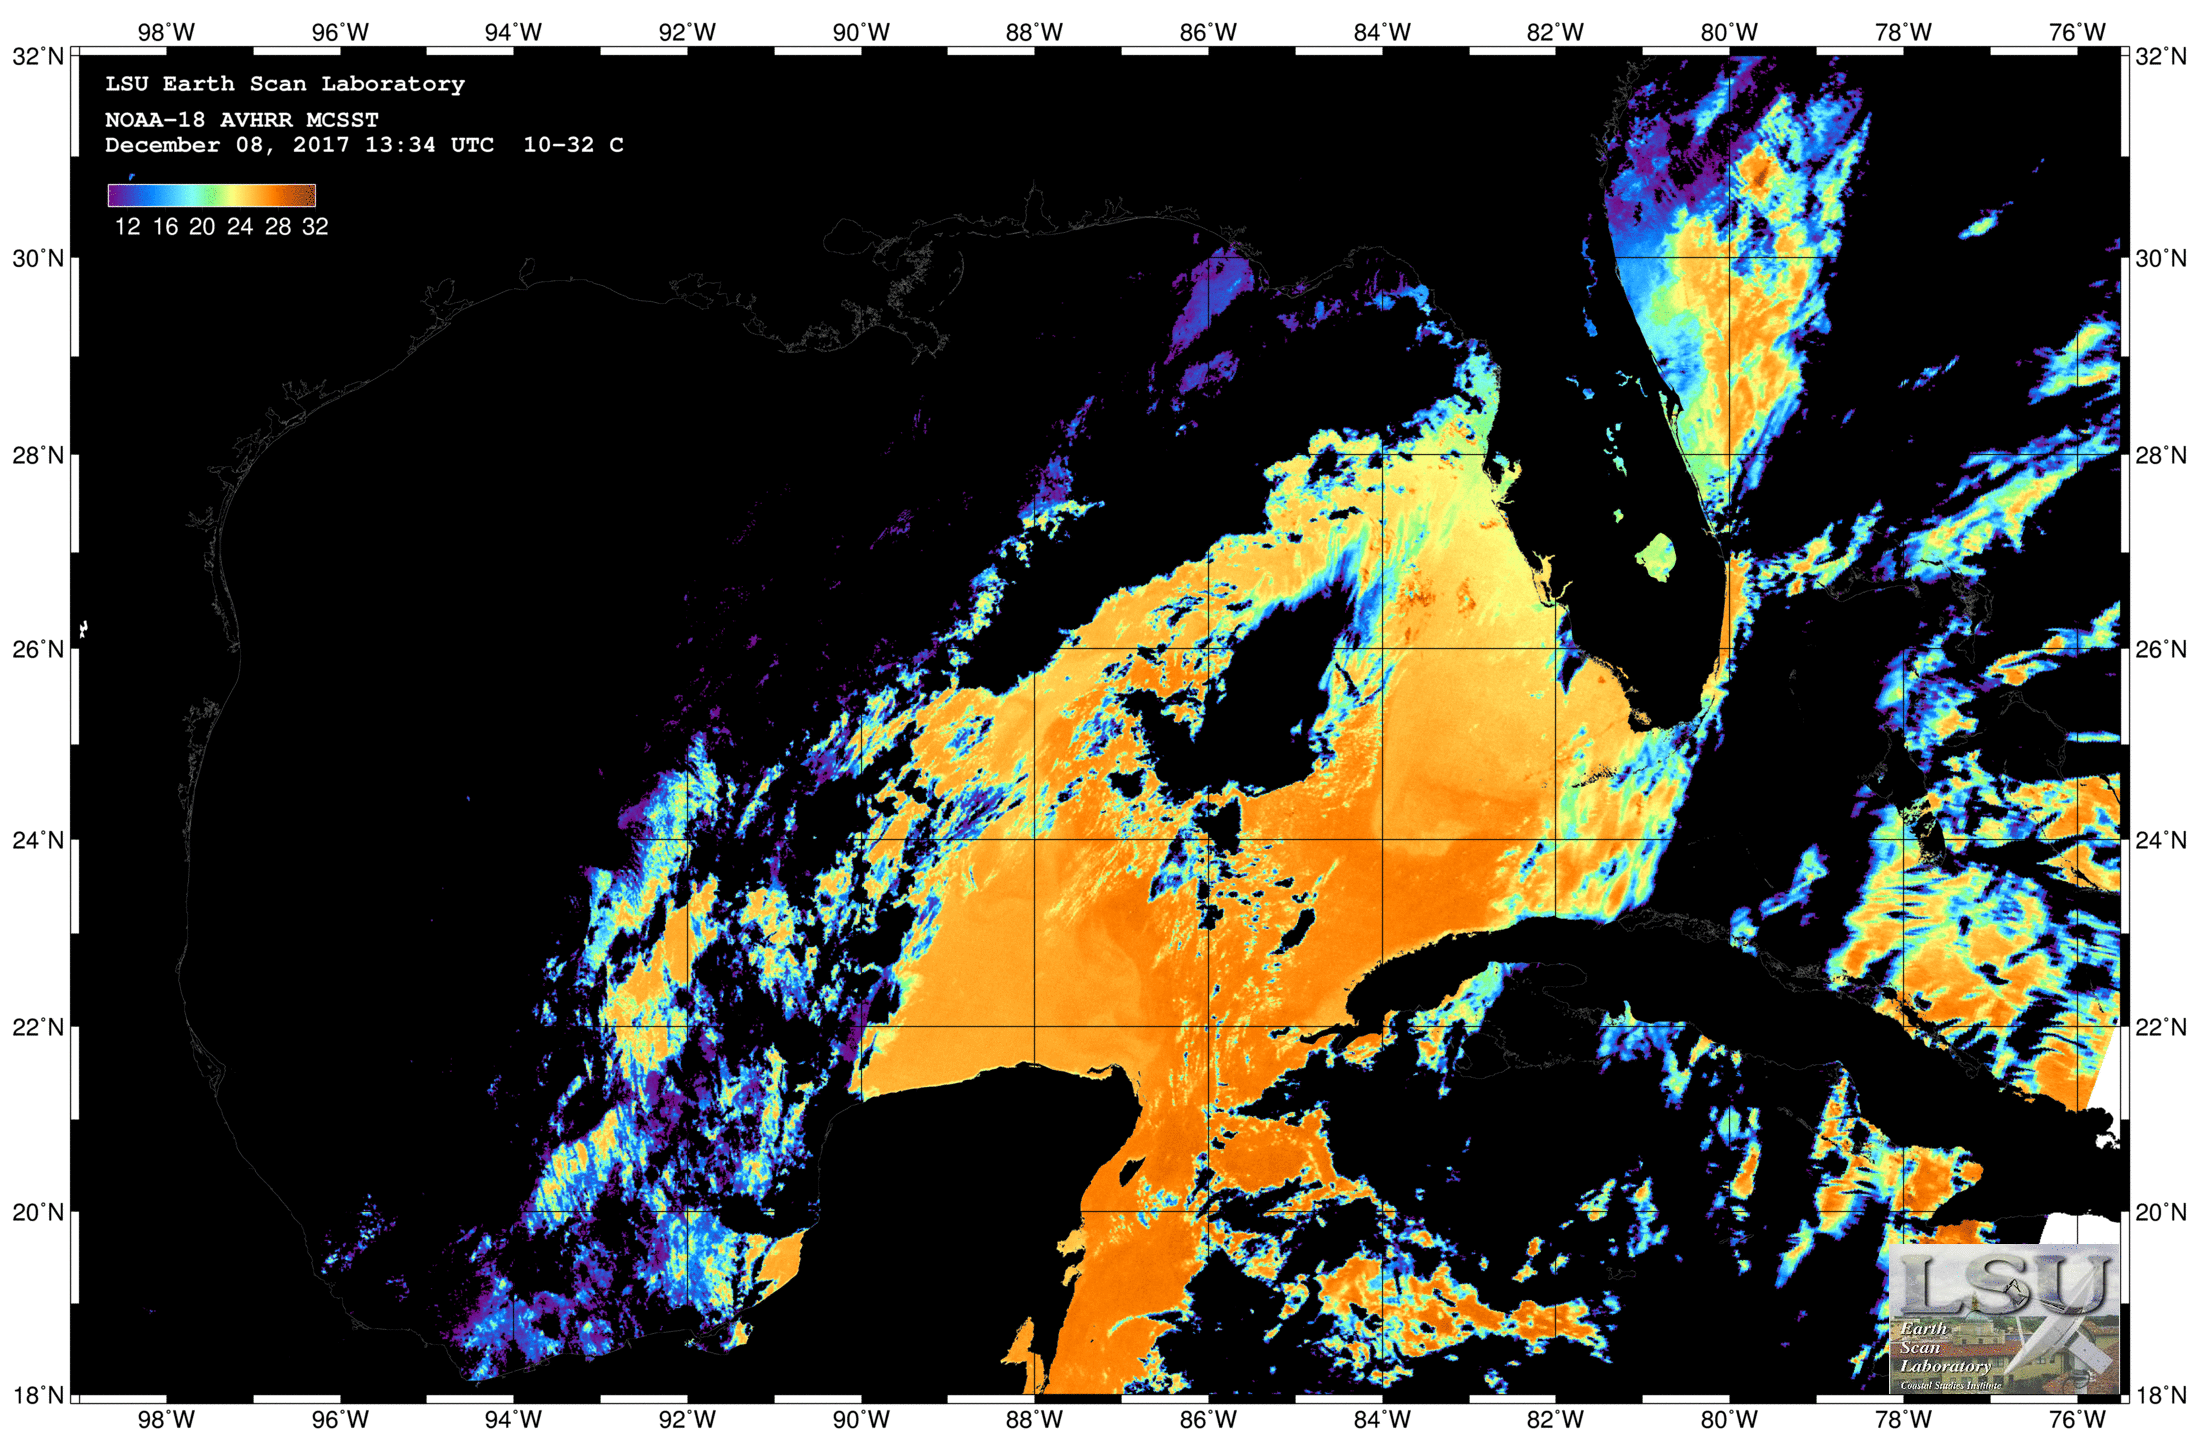 Dec 08 2017 13:34 UTC NOAA-18 SST - No Cloudmask